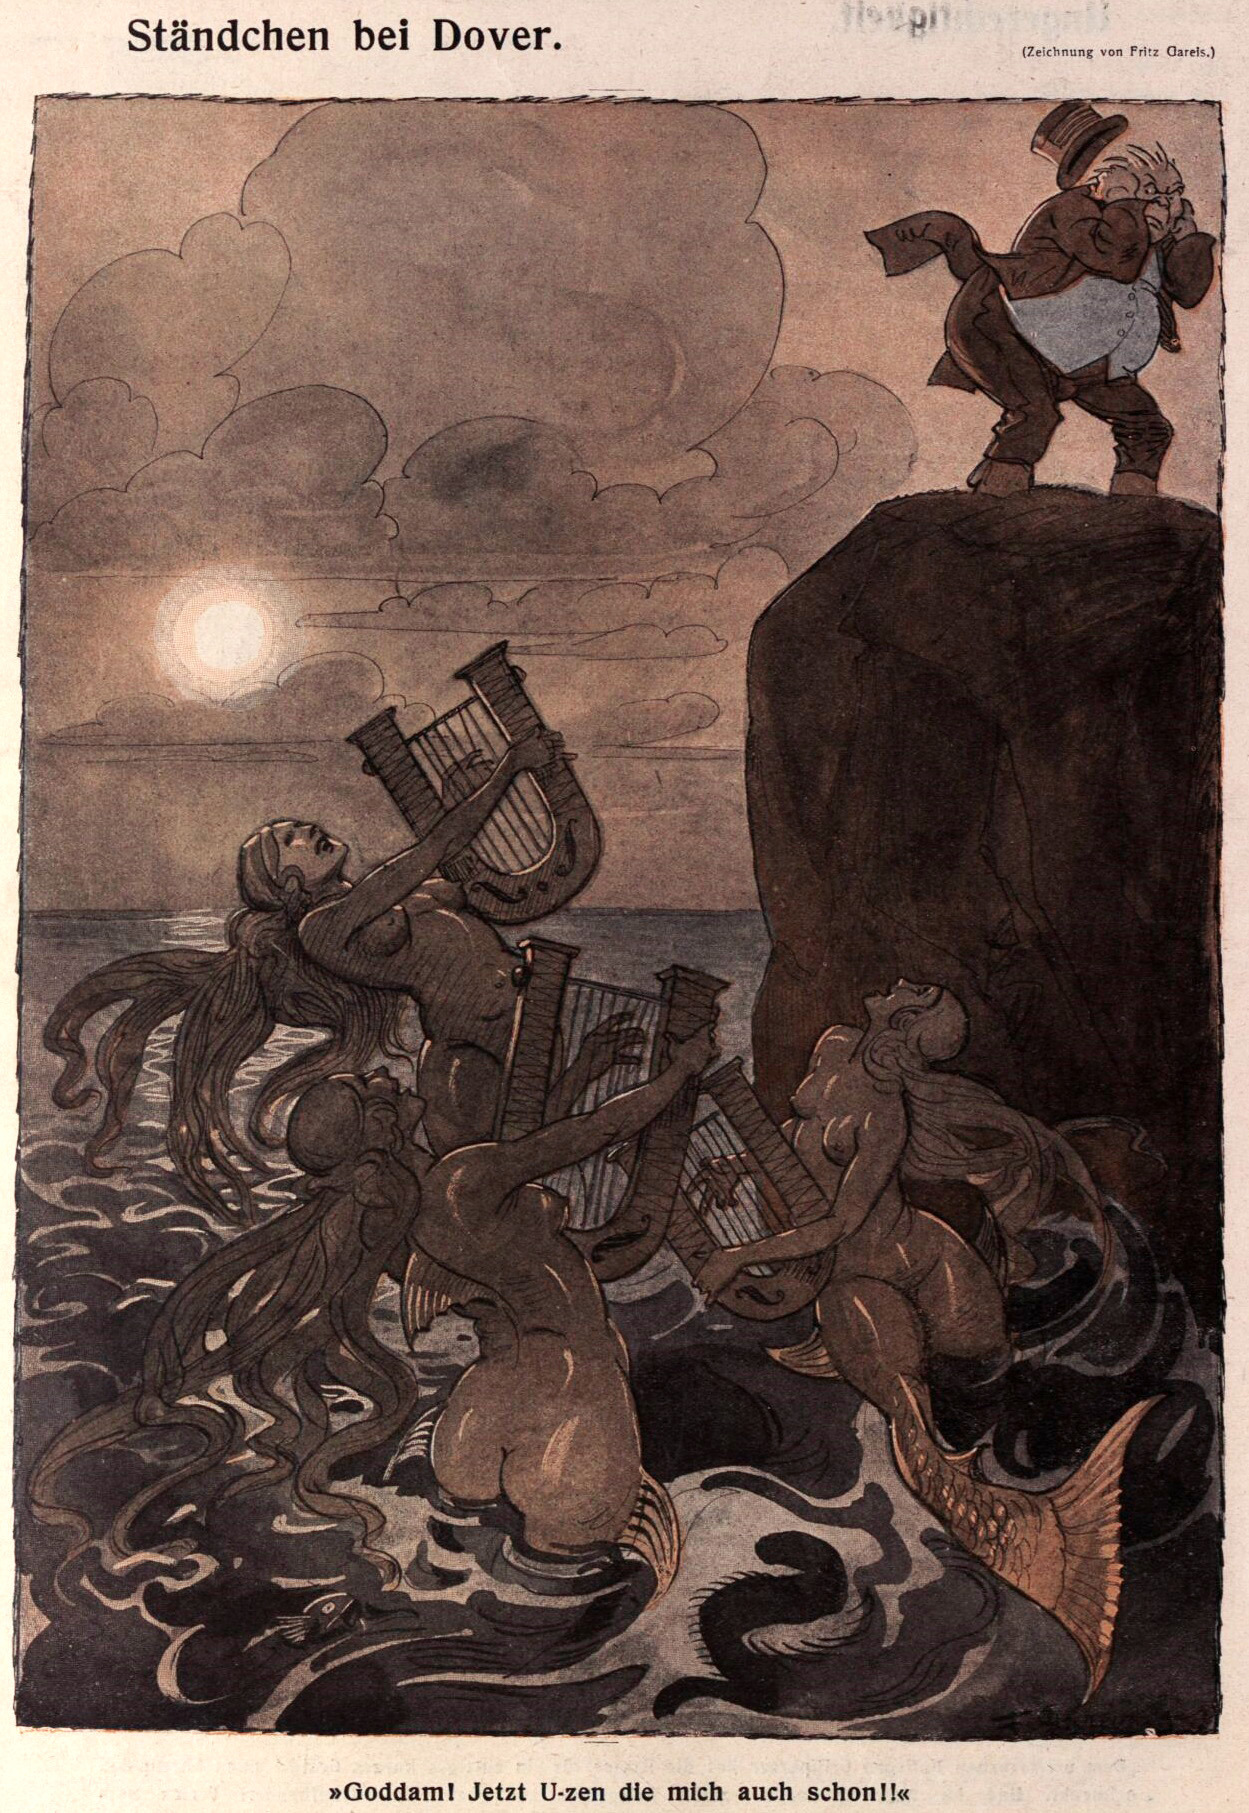 Fritz Gareis (1872-1925), ’ Ständchen bei Dover’ “Die Muskete”, Aug. 31, 1916
Source